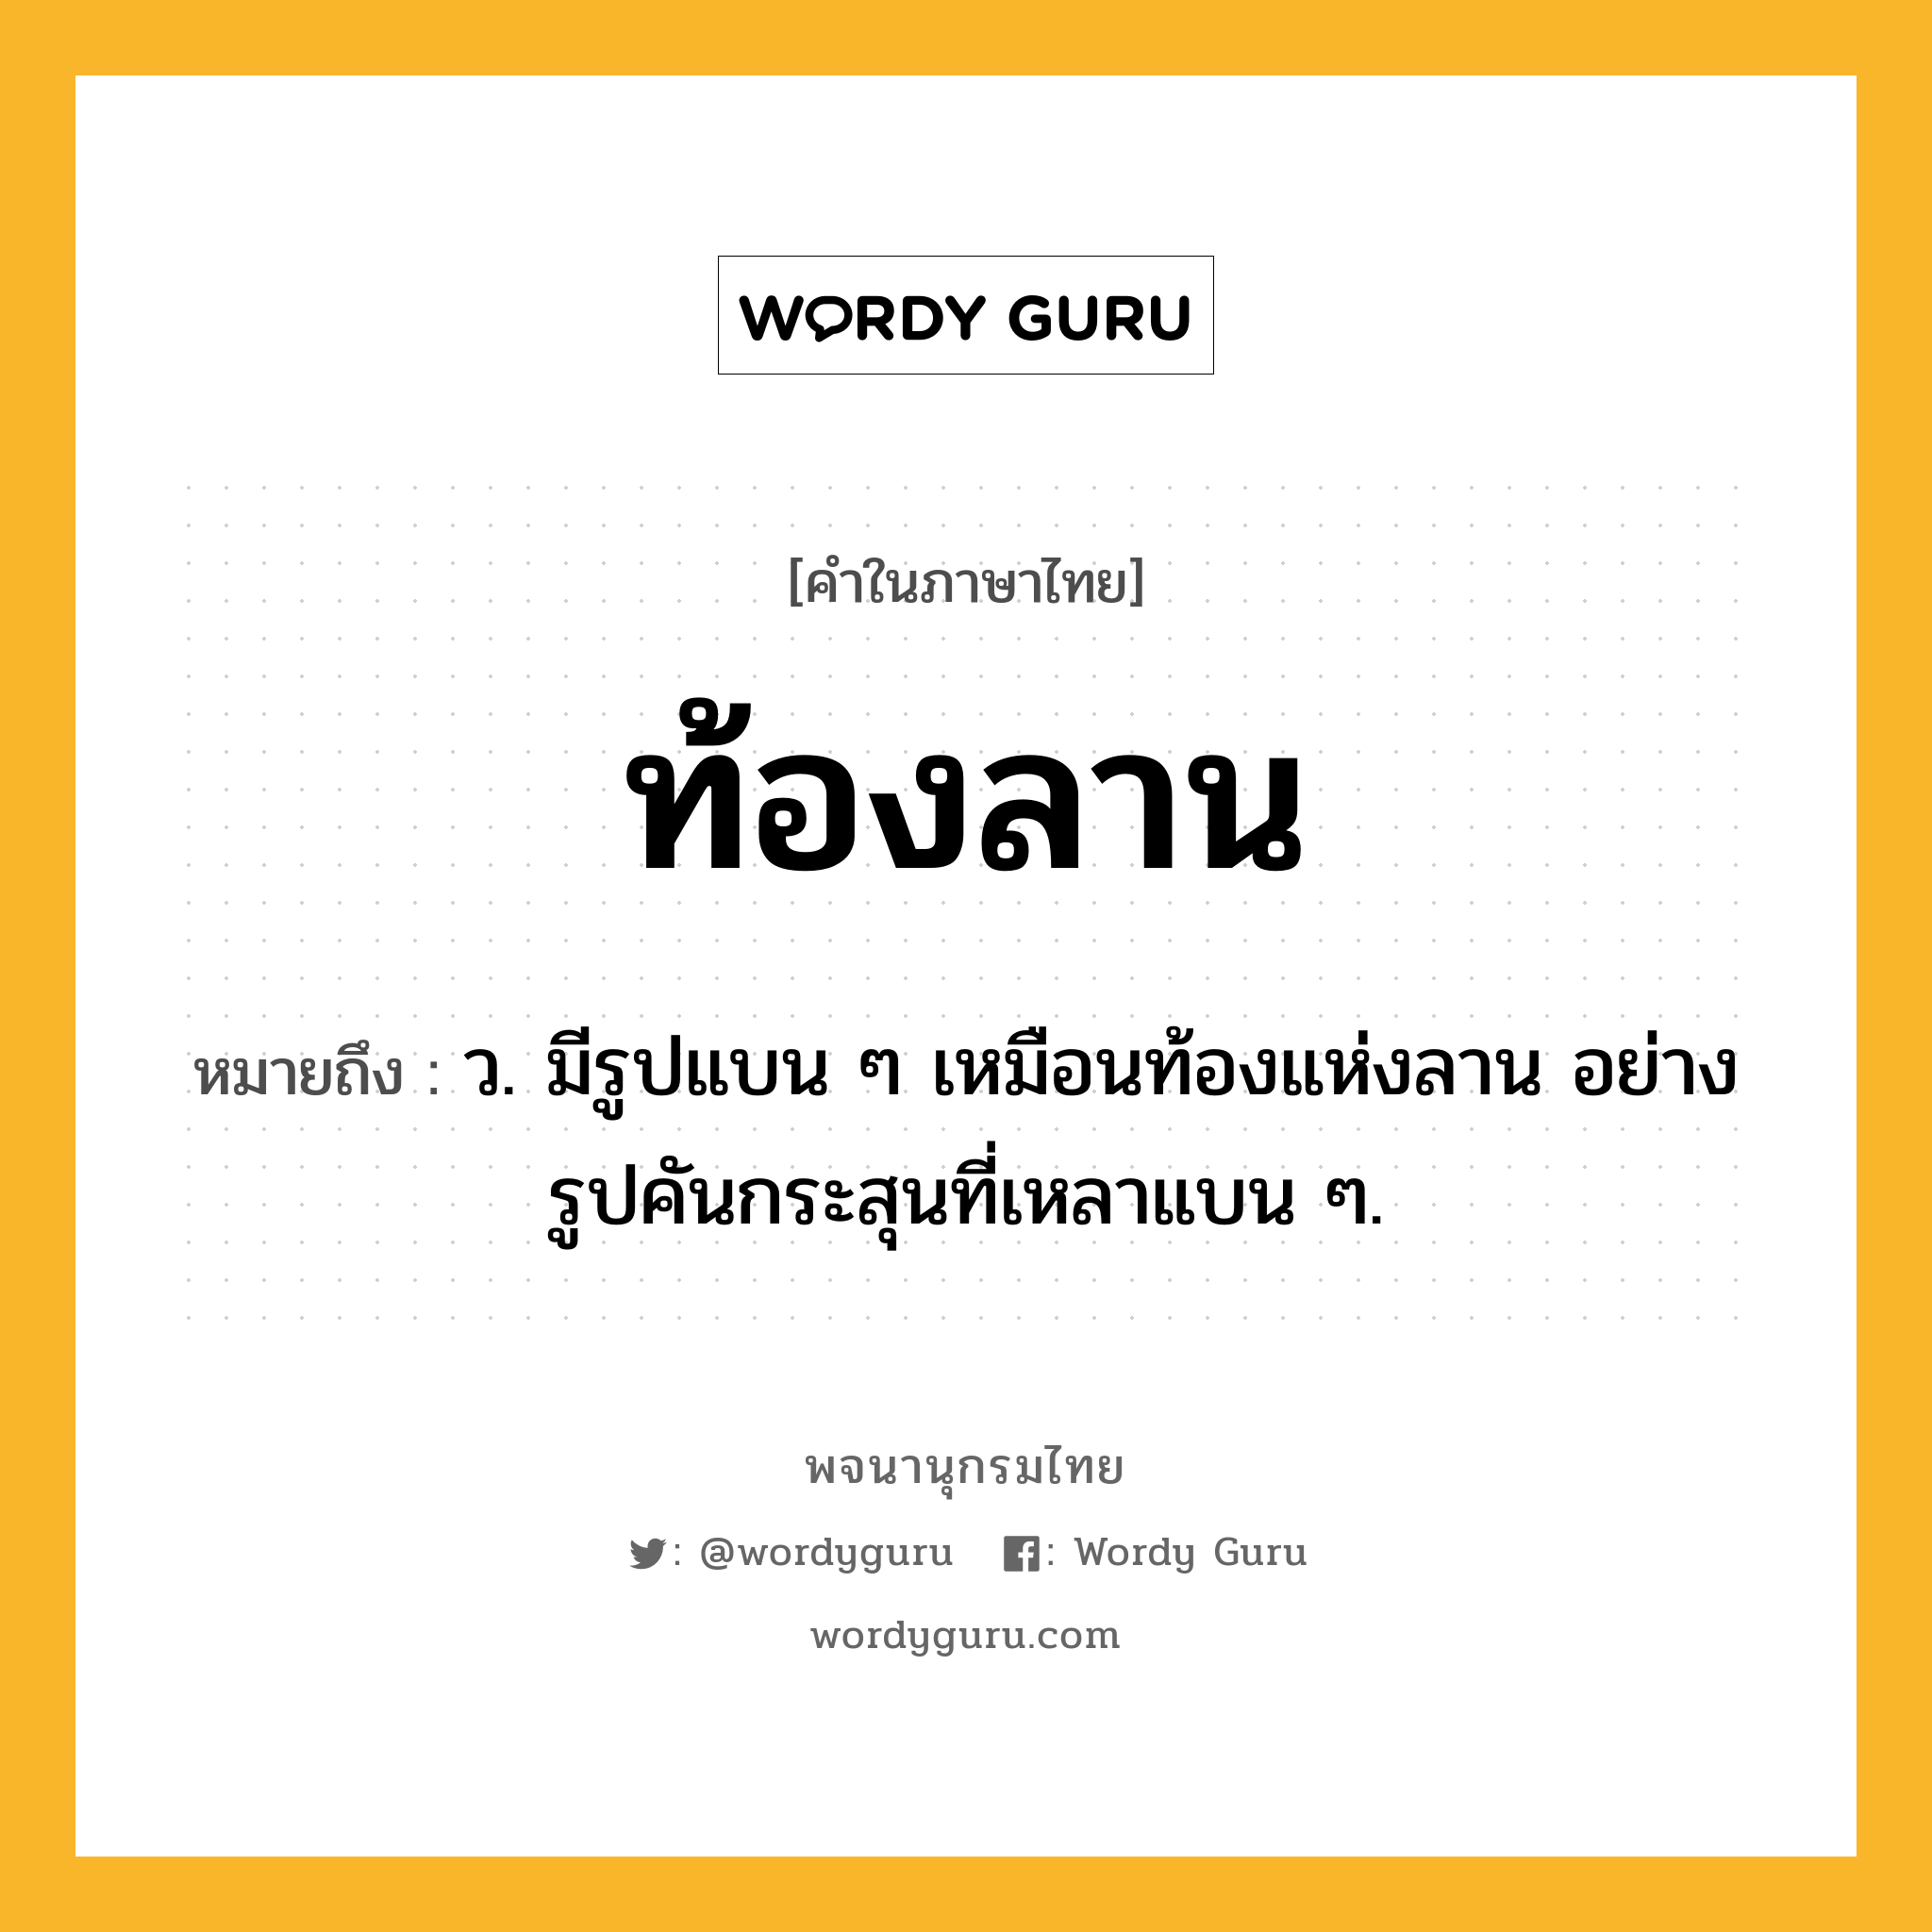 ท้องลาน ความหมาย หมายถึงอะไร?, คำในภาษาไทย ท้องลาน หมายถึง ว. มีรูปแบน ๆ เหมือนท้องแห่งลาน อย่างรูปคันกระสุนที่เหลาแบน ๆ.